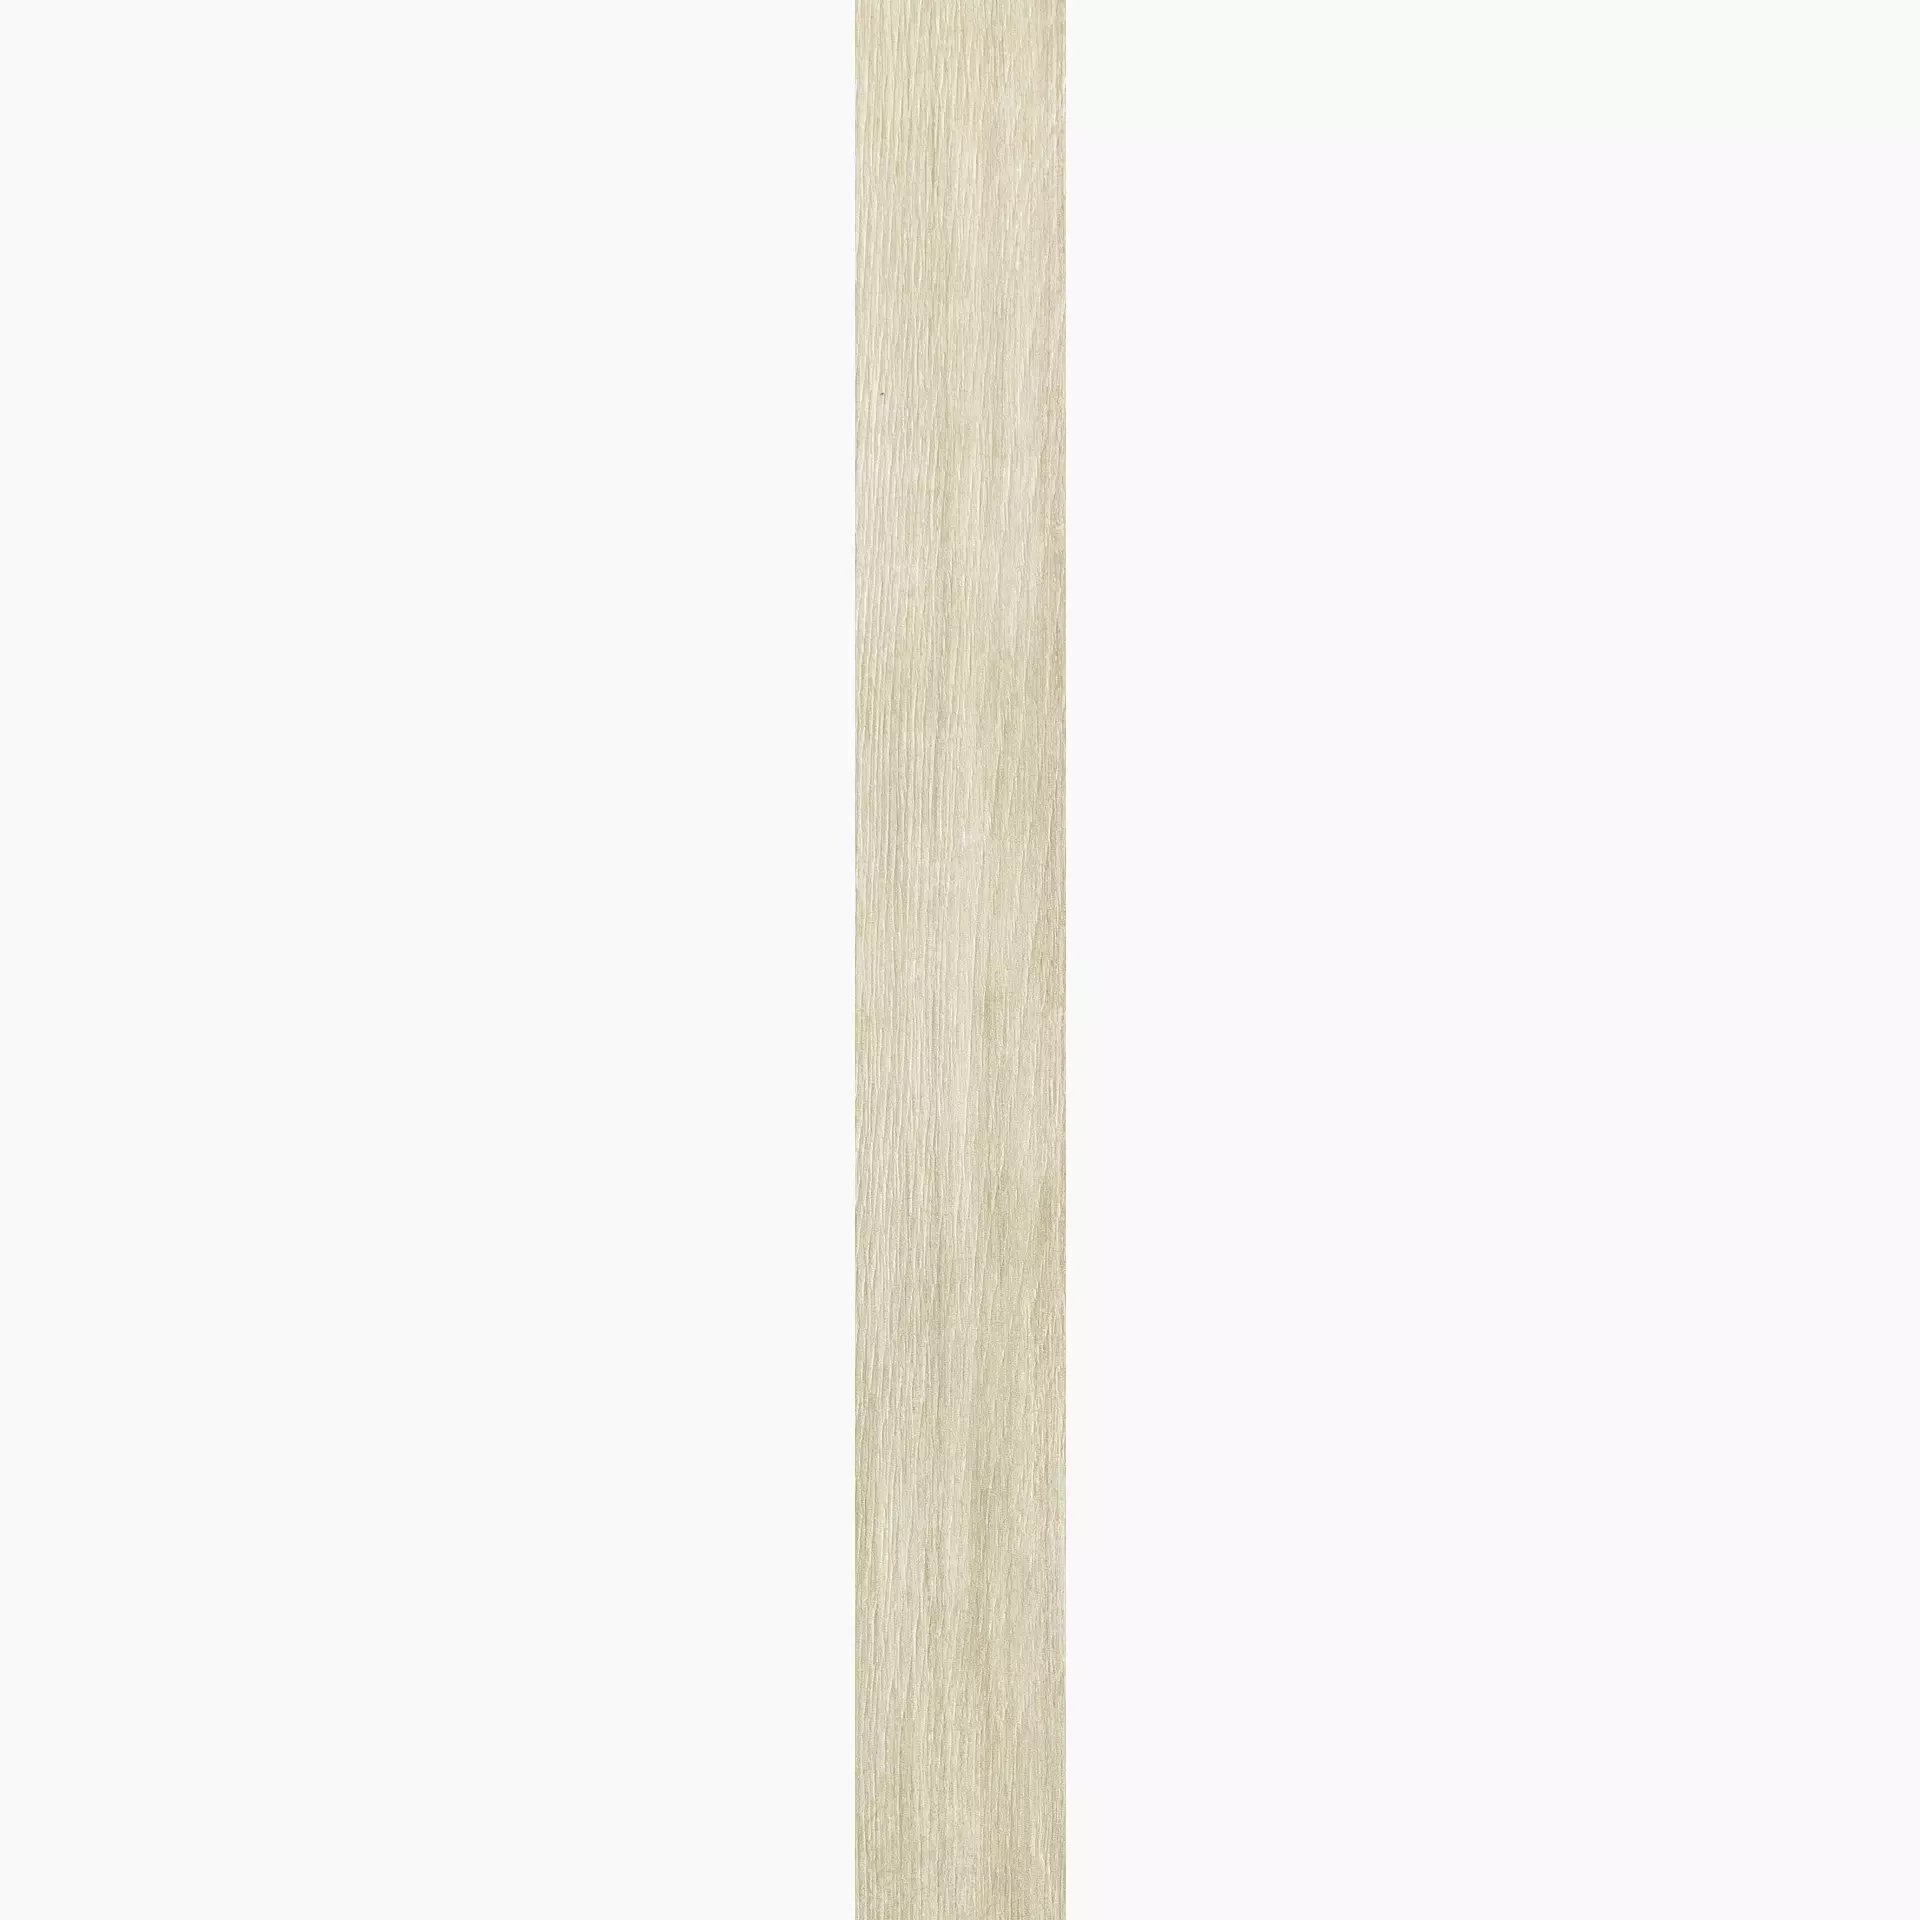 Florim Planches De Rex Amande Naturale – Matt Amande 755698 matt natur 20x180cm rektifiziert 9mm